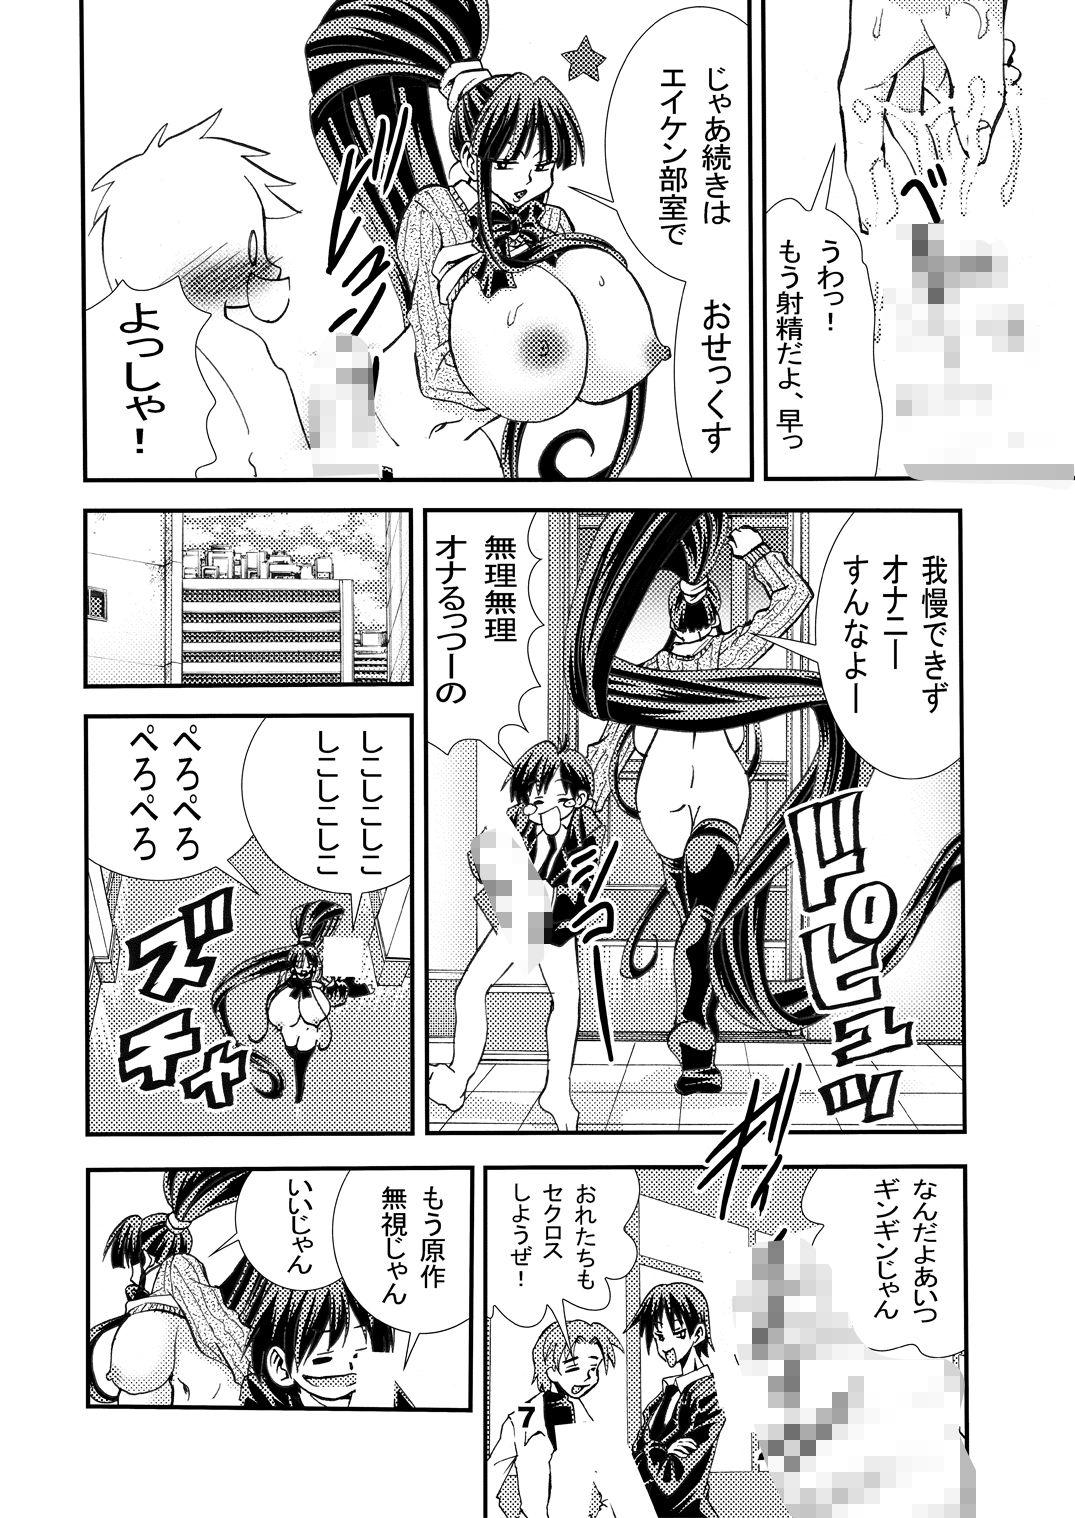 Chunky Eiken Makaizou 2 - Eiken Stripping - Page 7